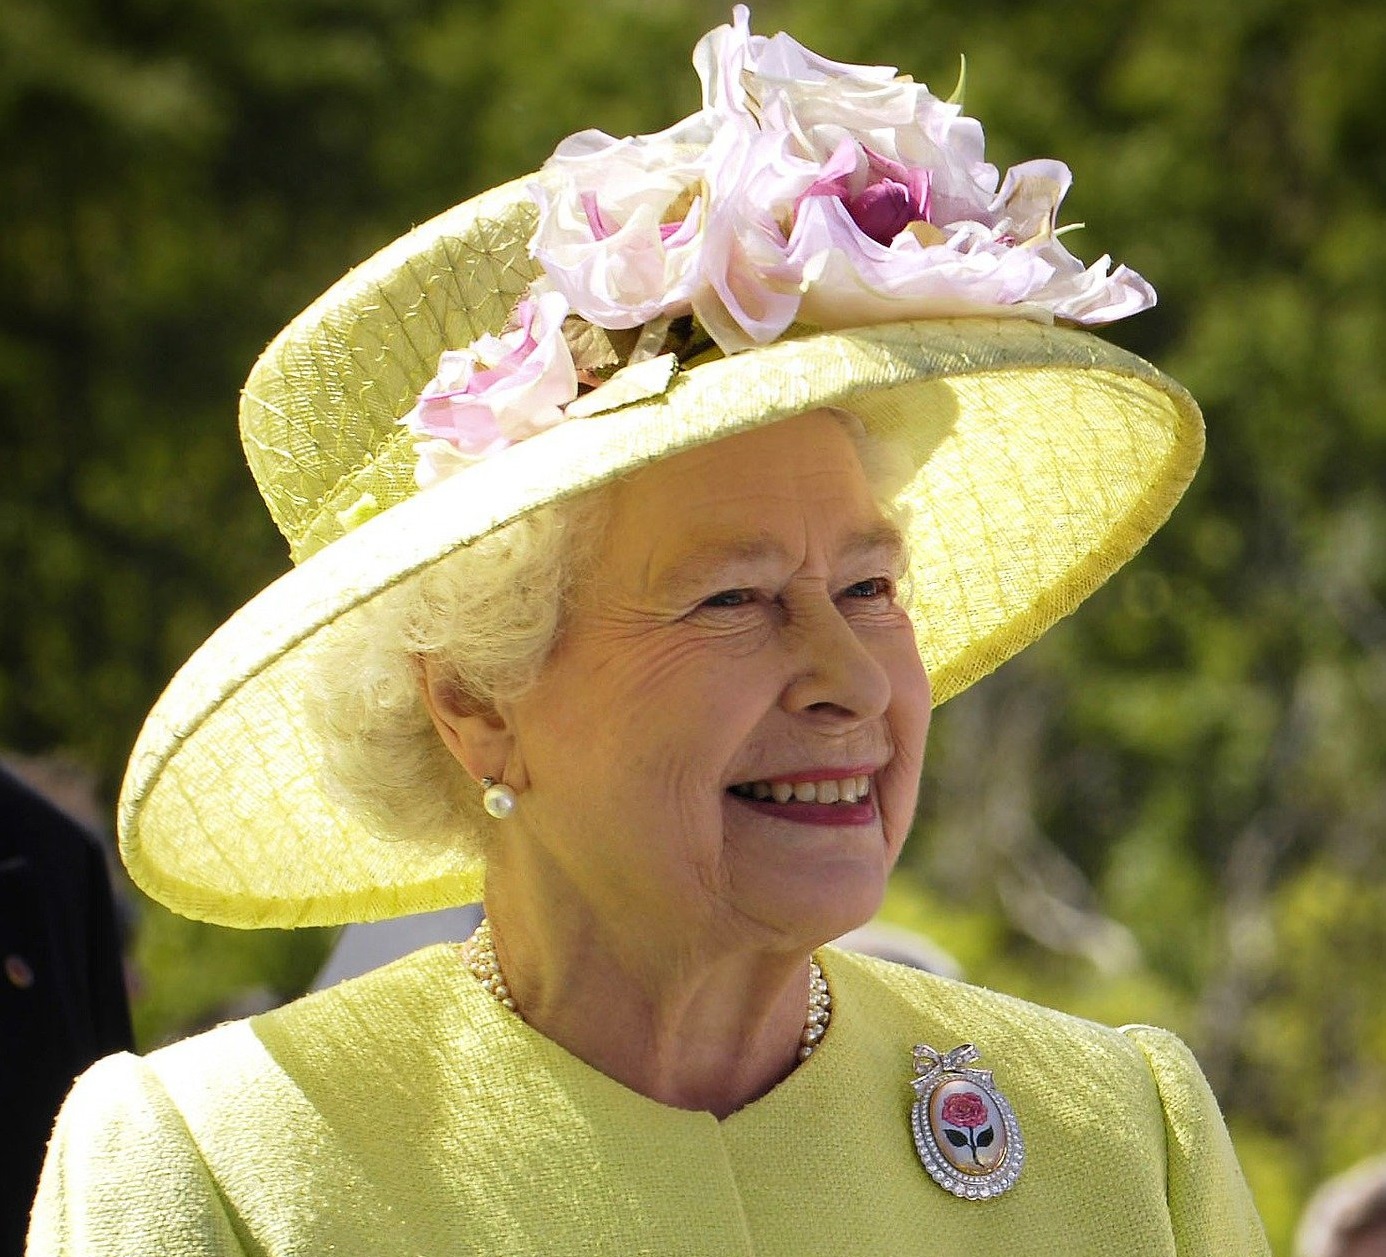 Тур на похороны. Лондон готовится к толпам туристов на прощании с Елизаветой II